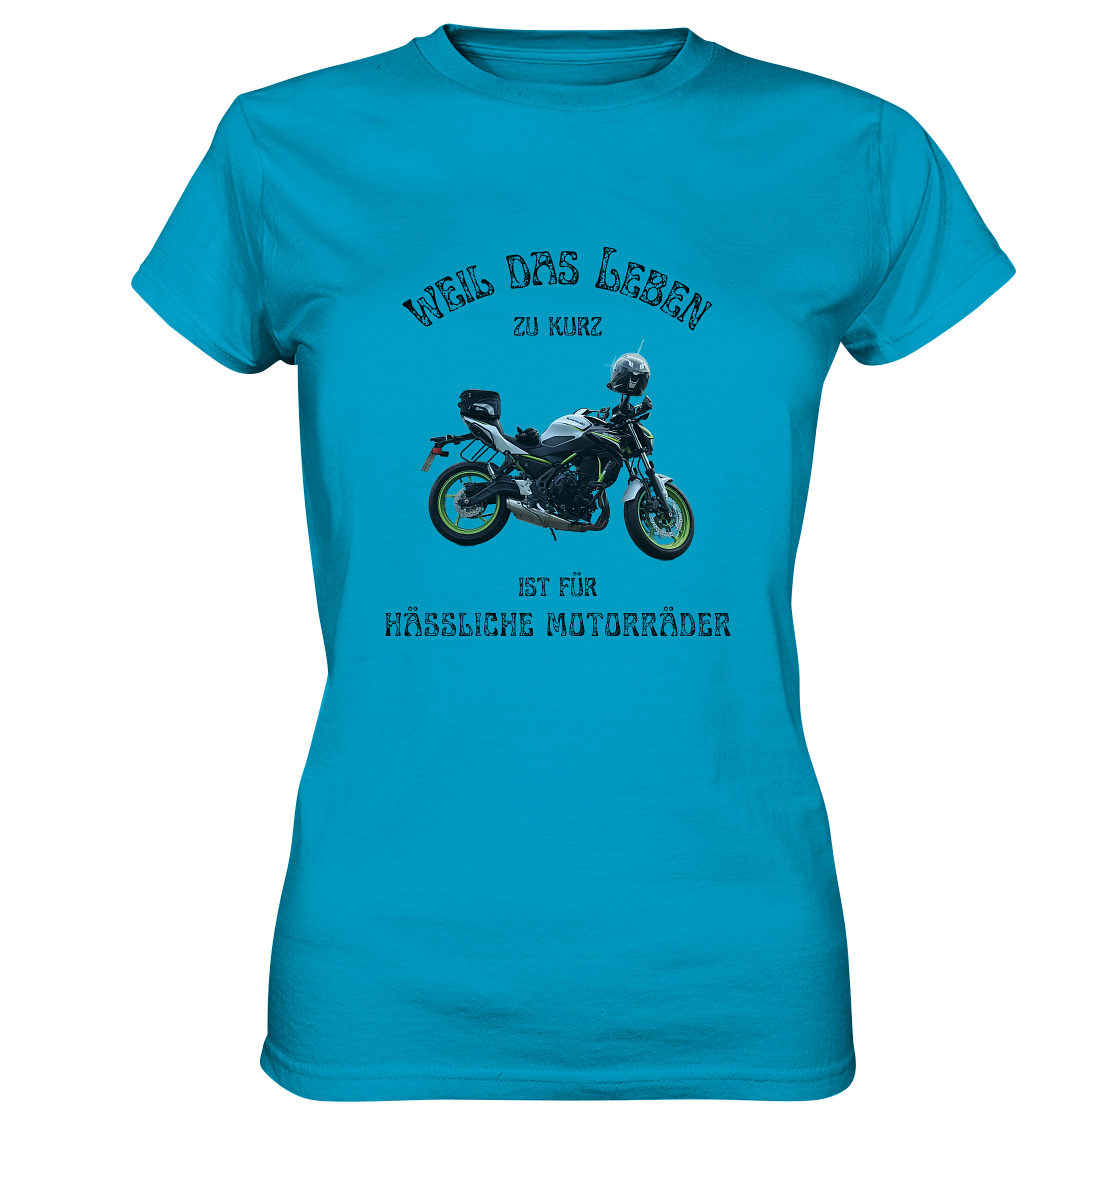 "Weil das Leben zu kurz ist für hässliche Motorräder" _ für Angelika | individualisiertes Damen-Shirt mit Motorrad-Foto und Spruch in dunklem Design